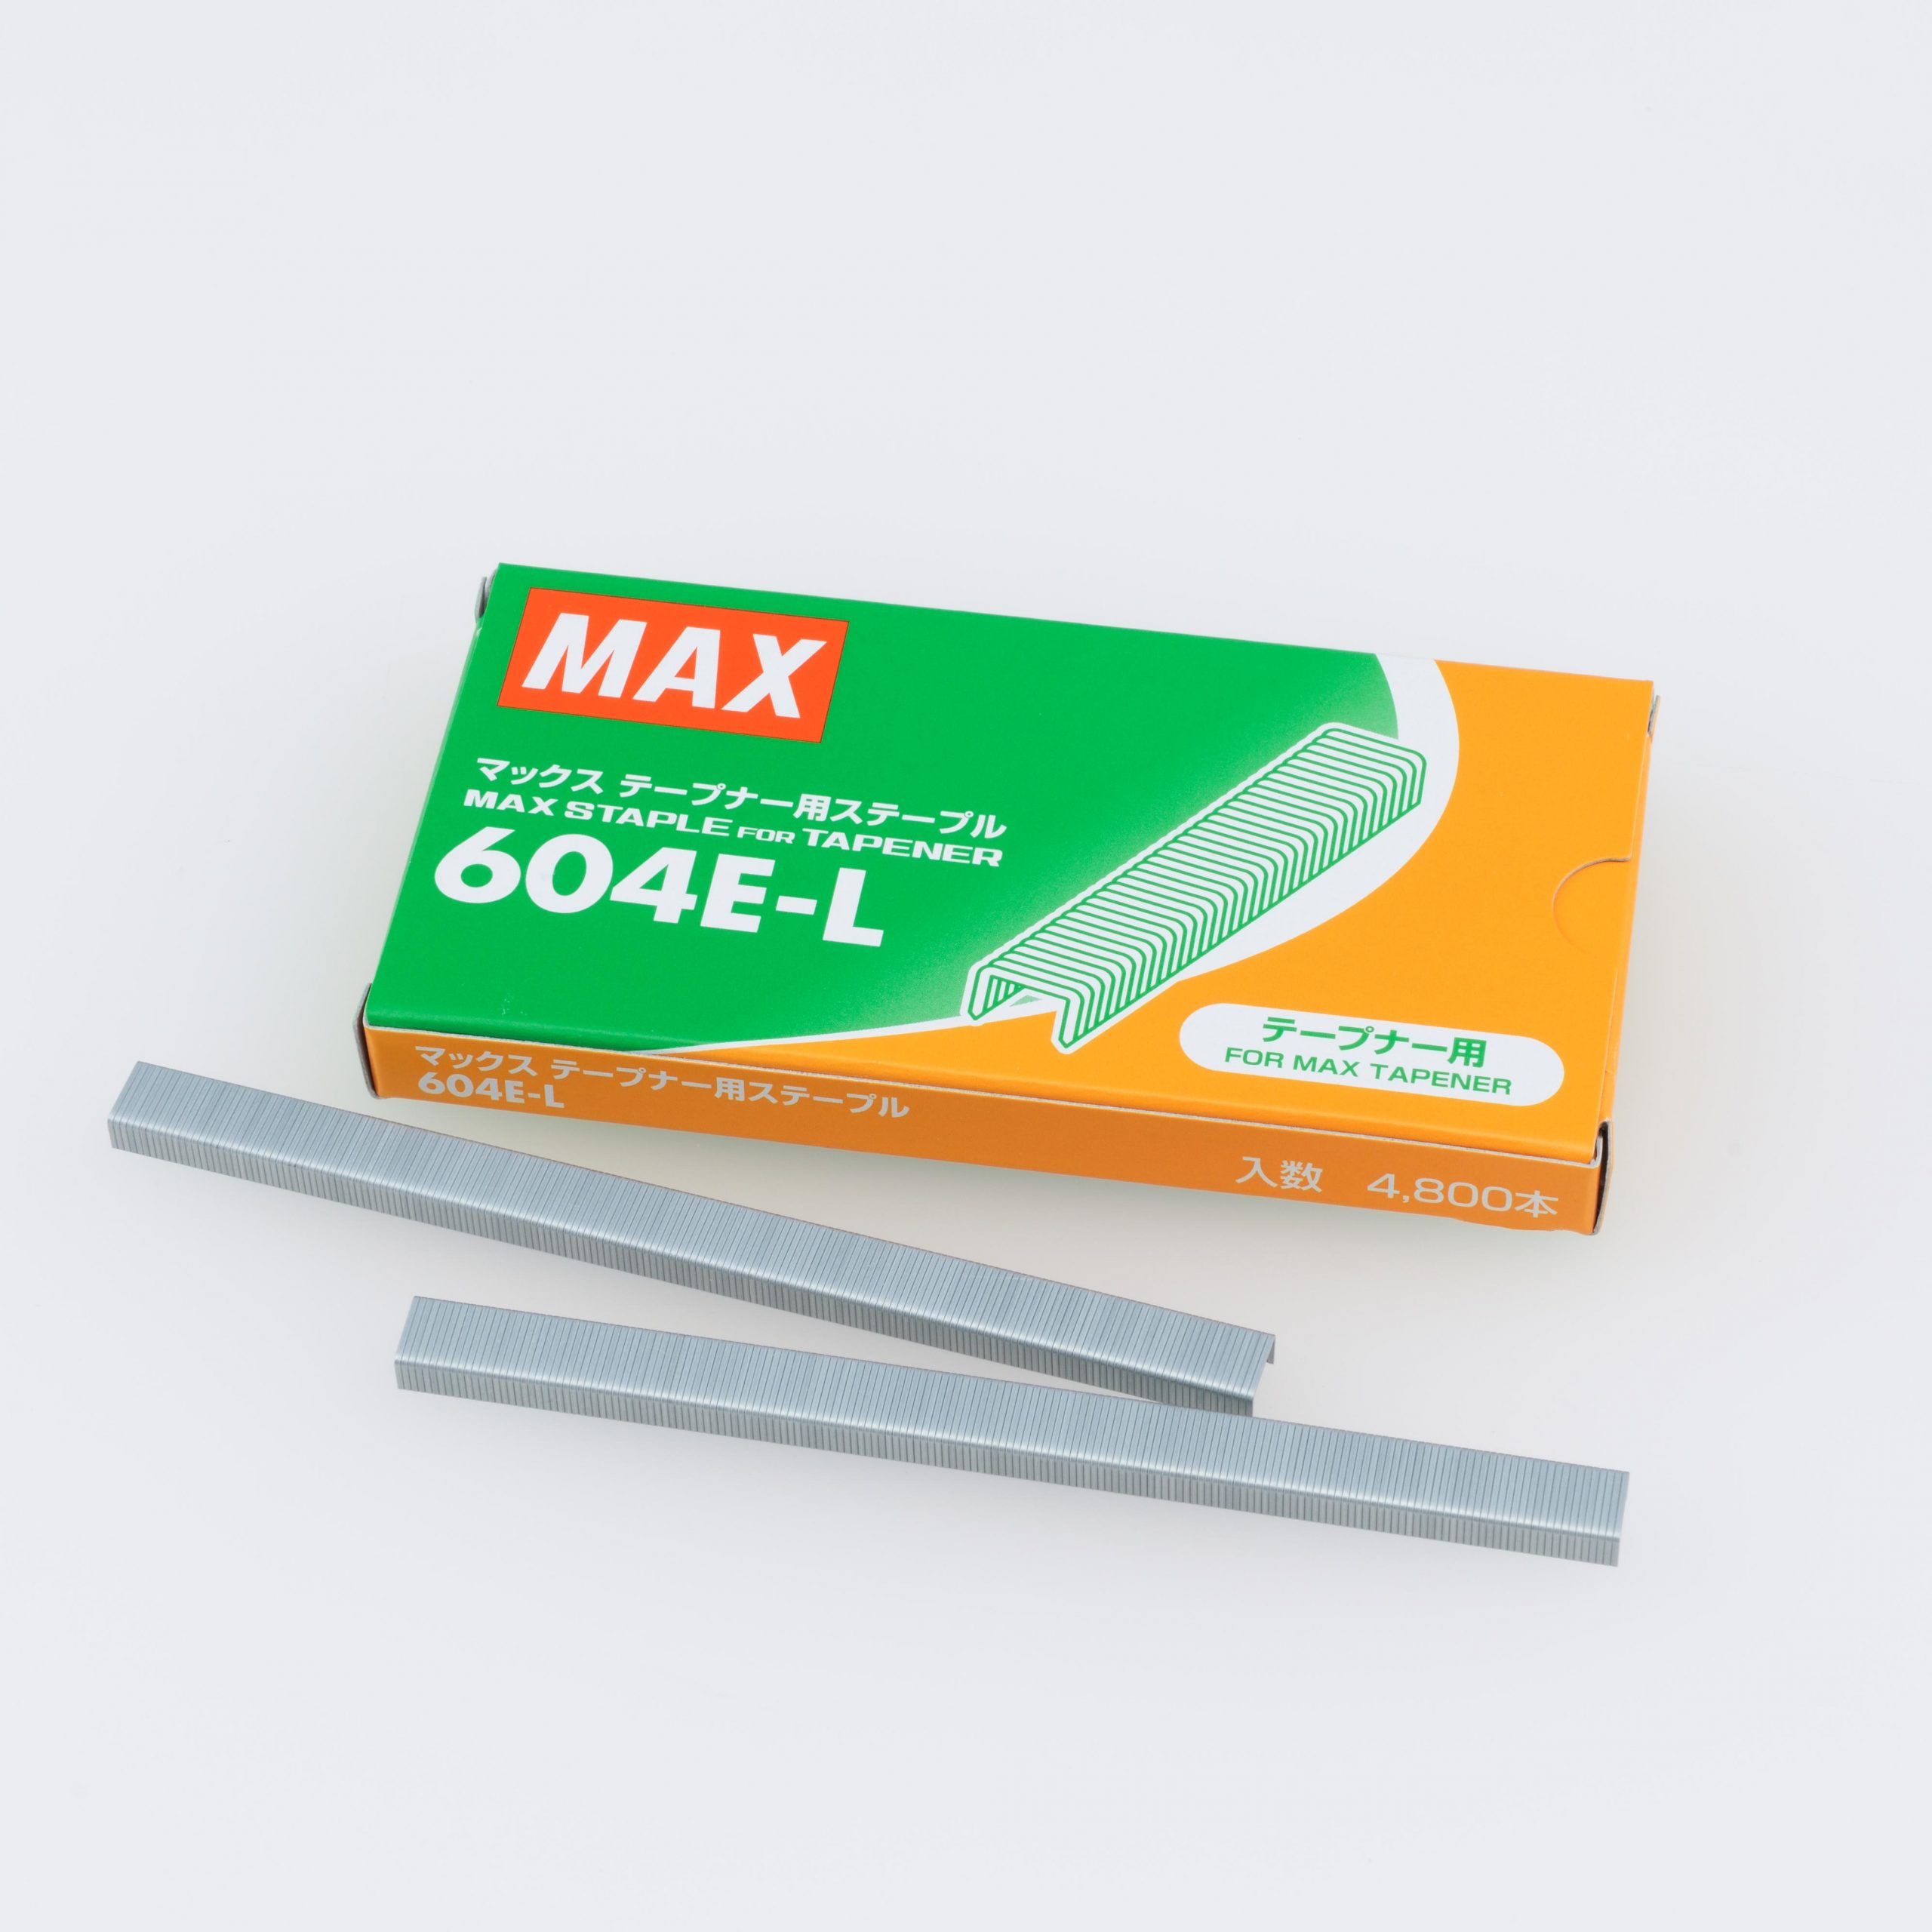 SALE／91%OFF】 MAX マックステープナー用ステープル 604E-L 10個入り 1C S